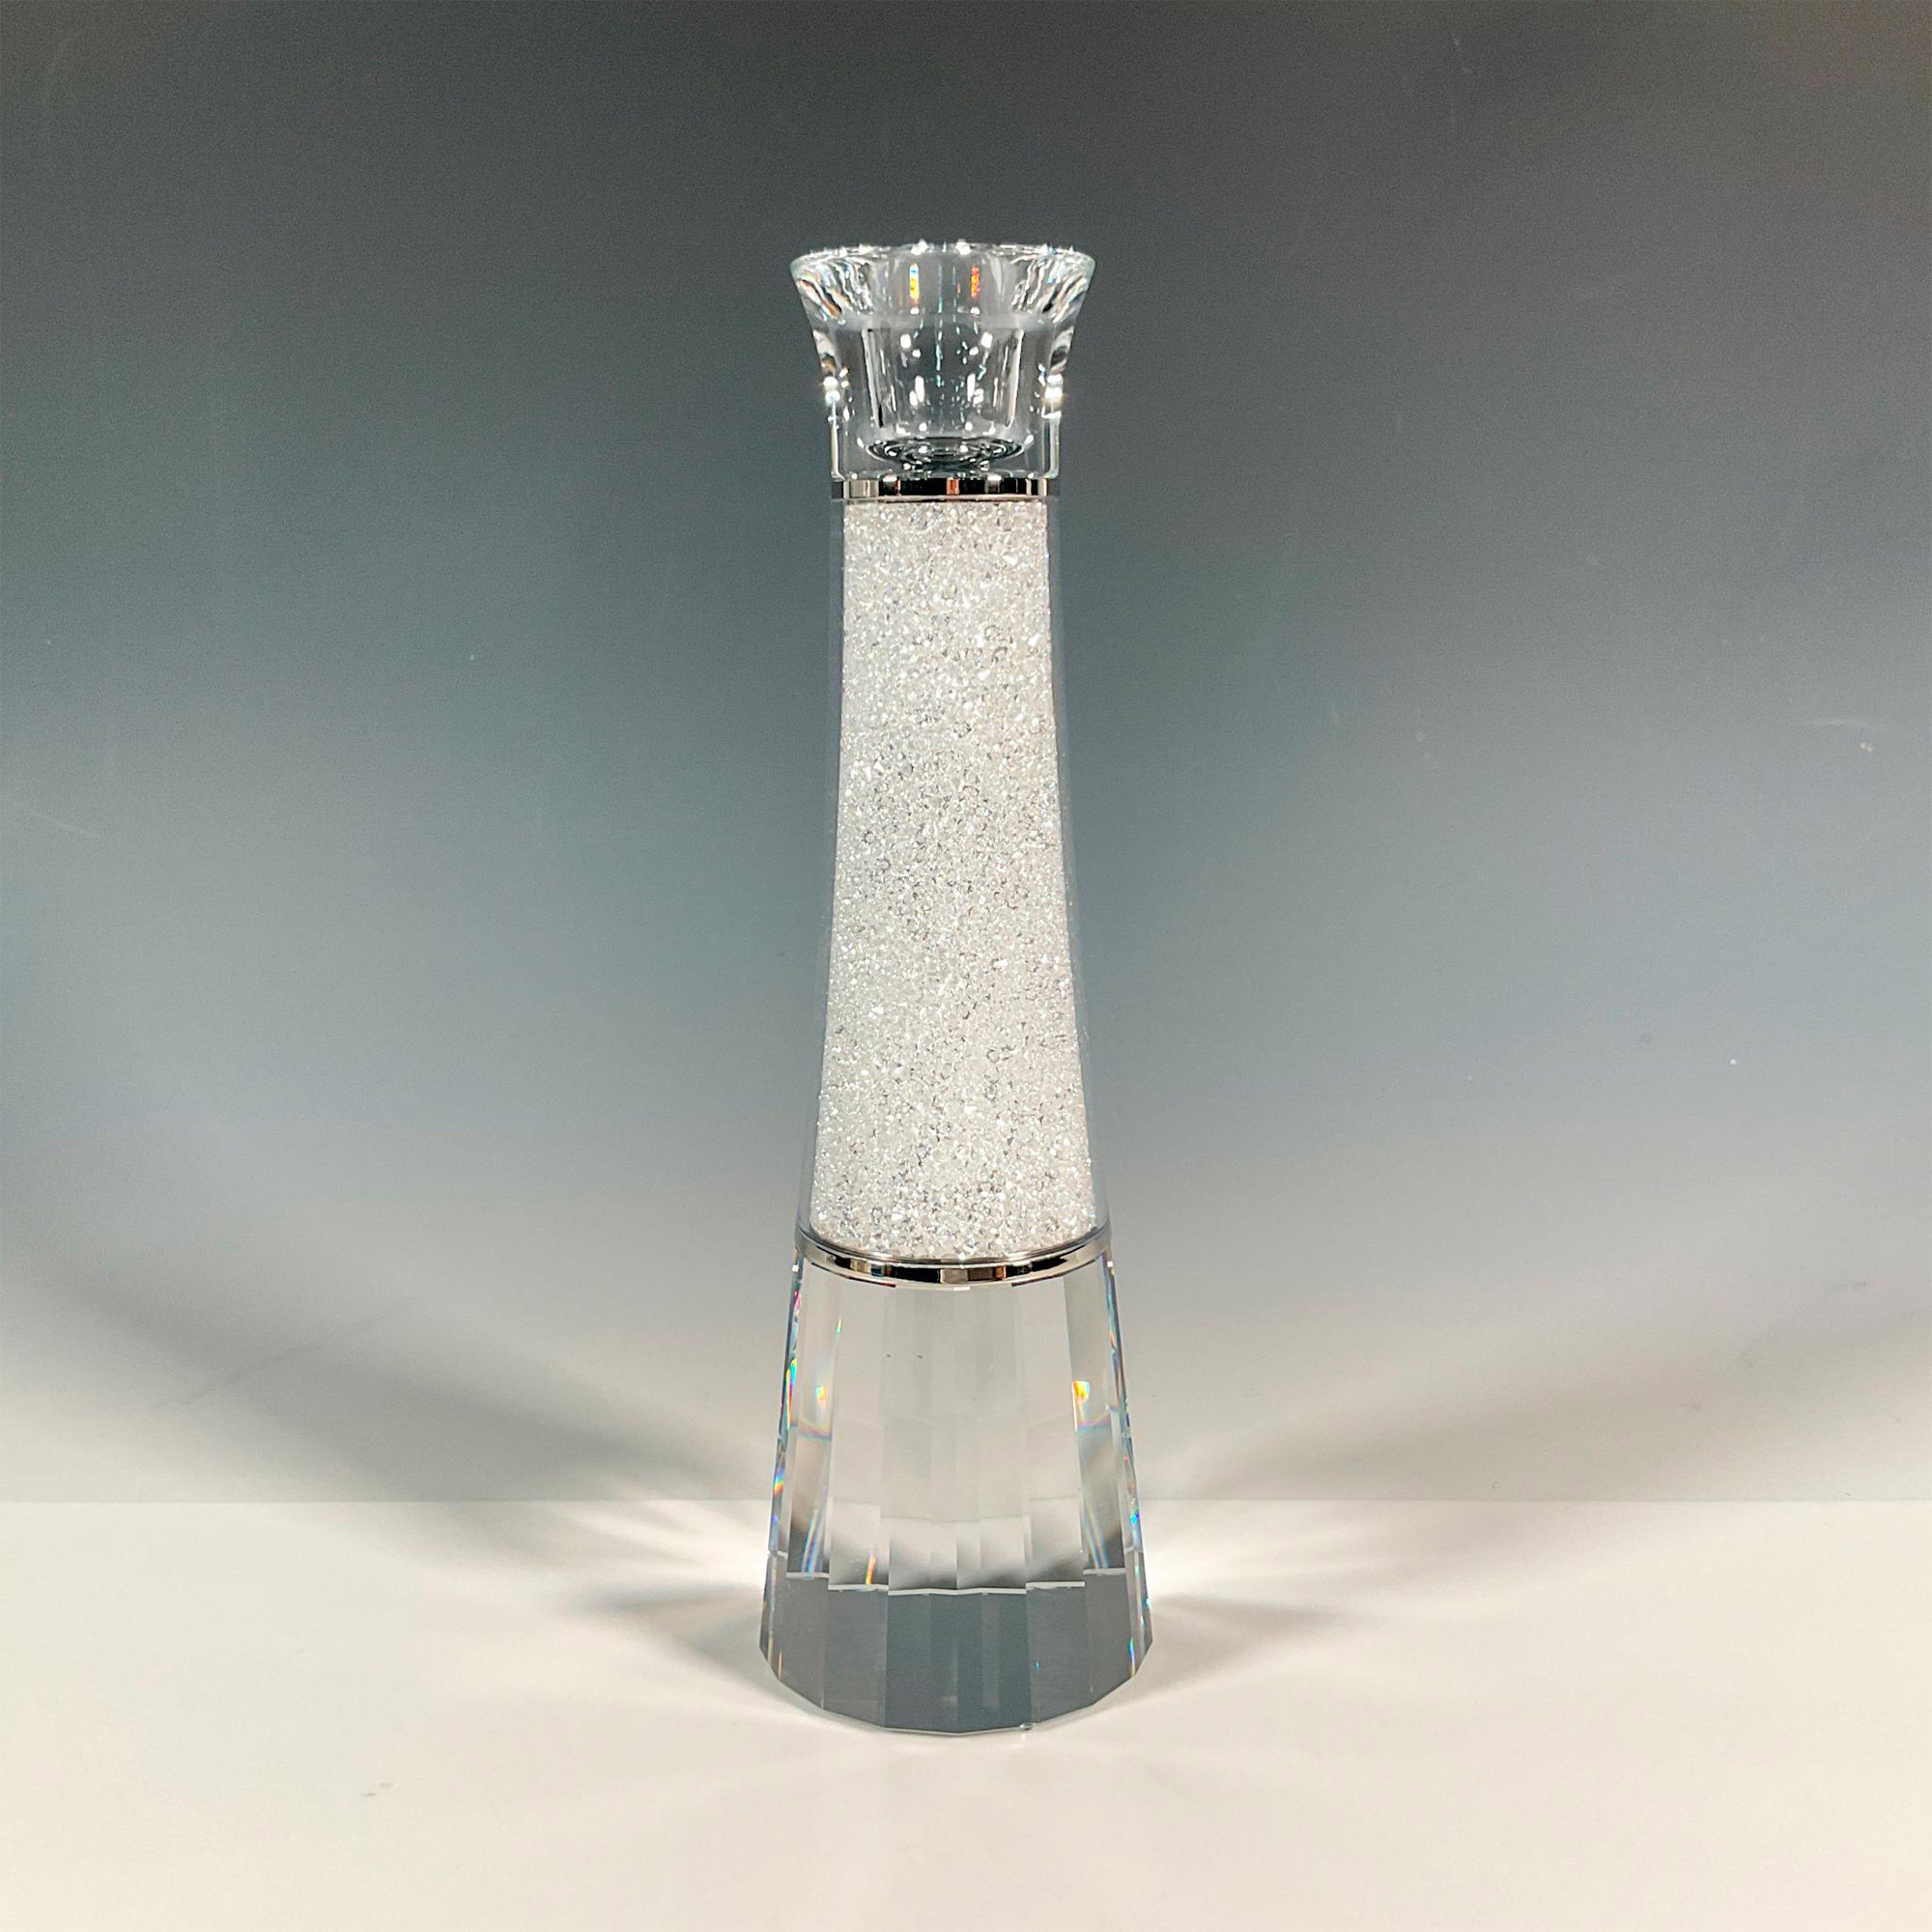 Swarovski Crystal Candle Holder, Crystalline - Image 2 of 4